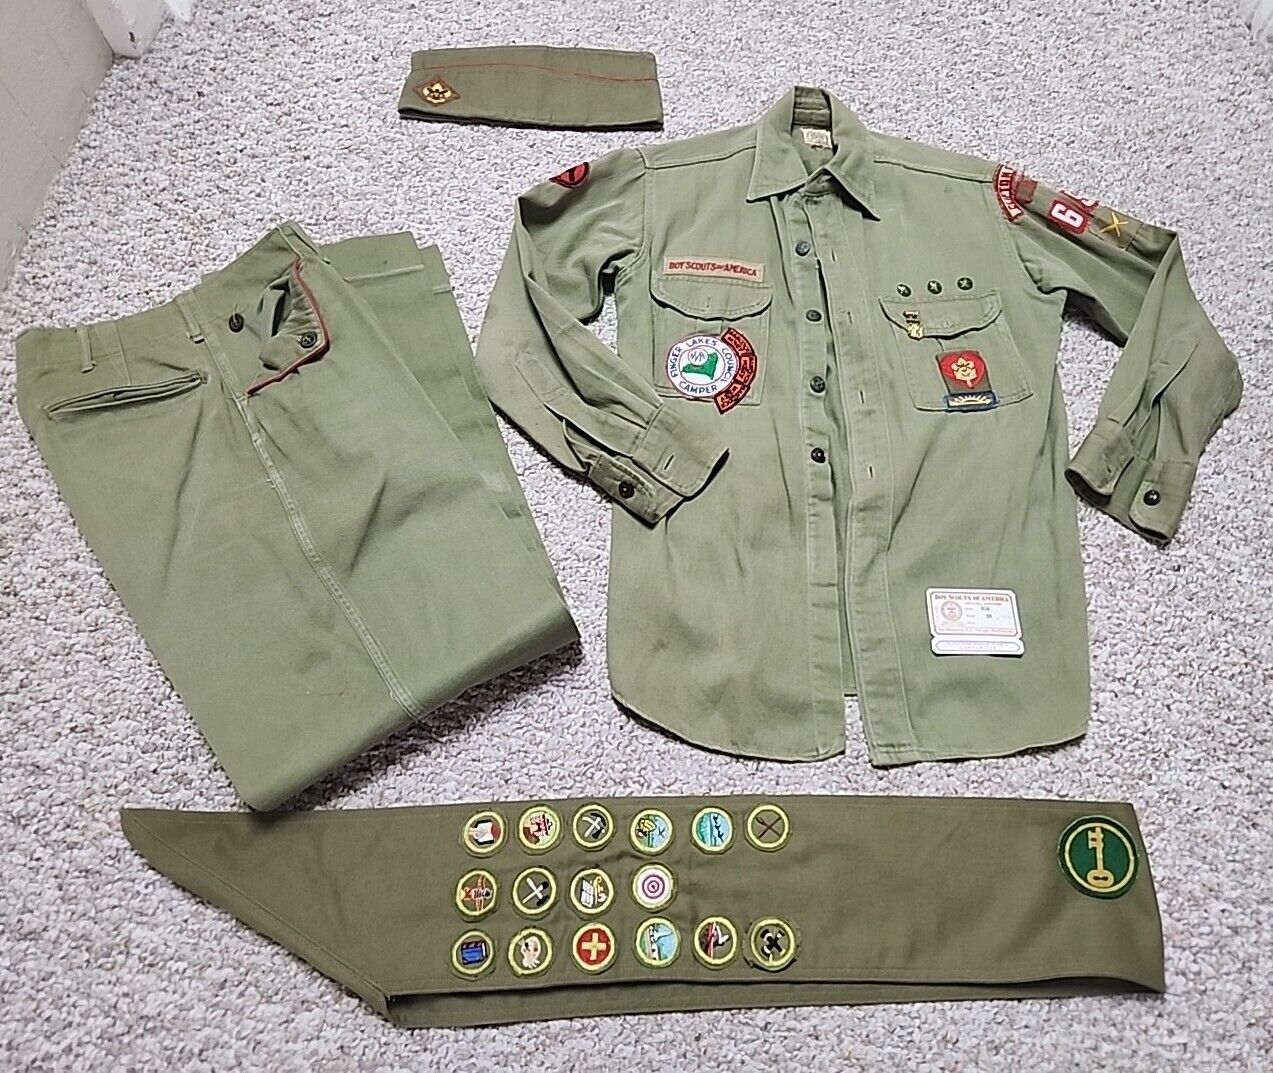 Vintage 1950s Sanforized BSA Boy Scout Uniform, Sash Badges, Pins Memorabilia